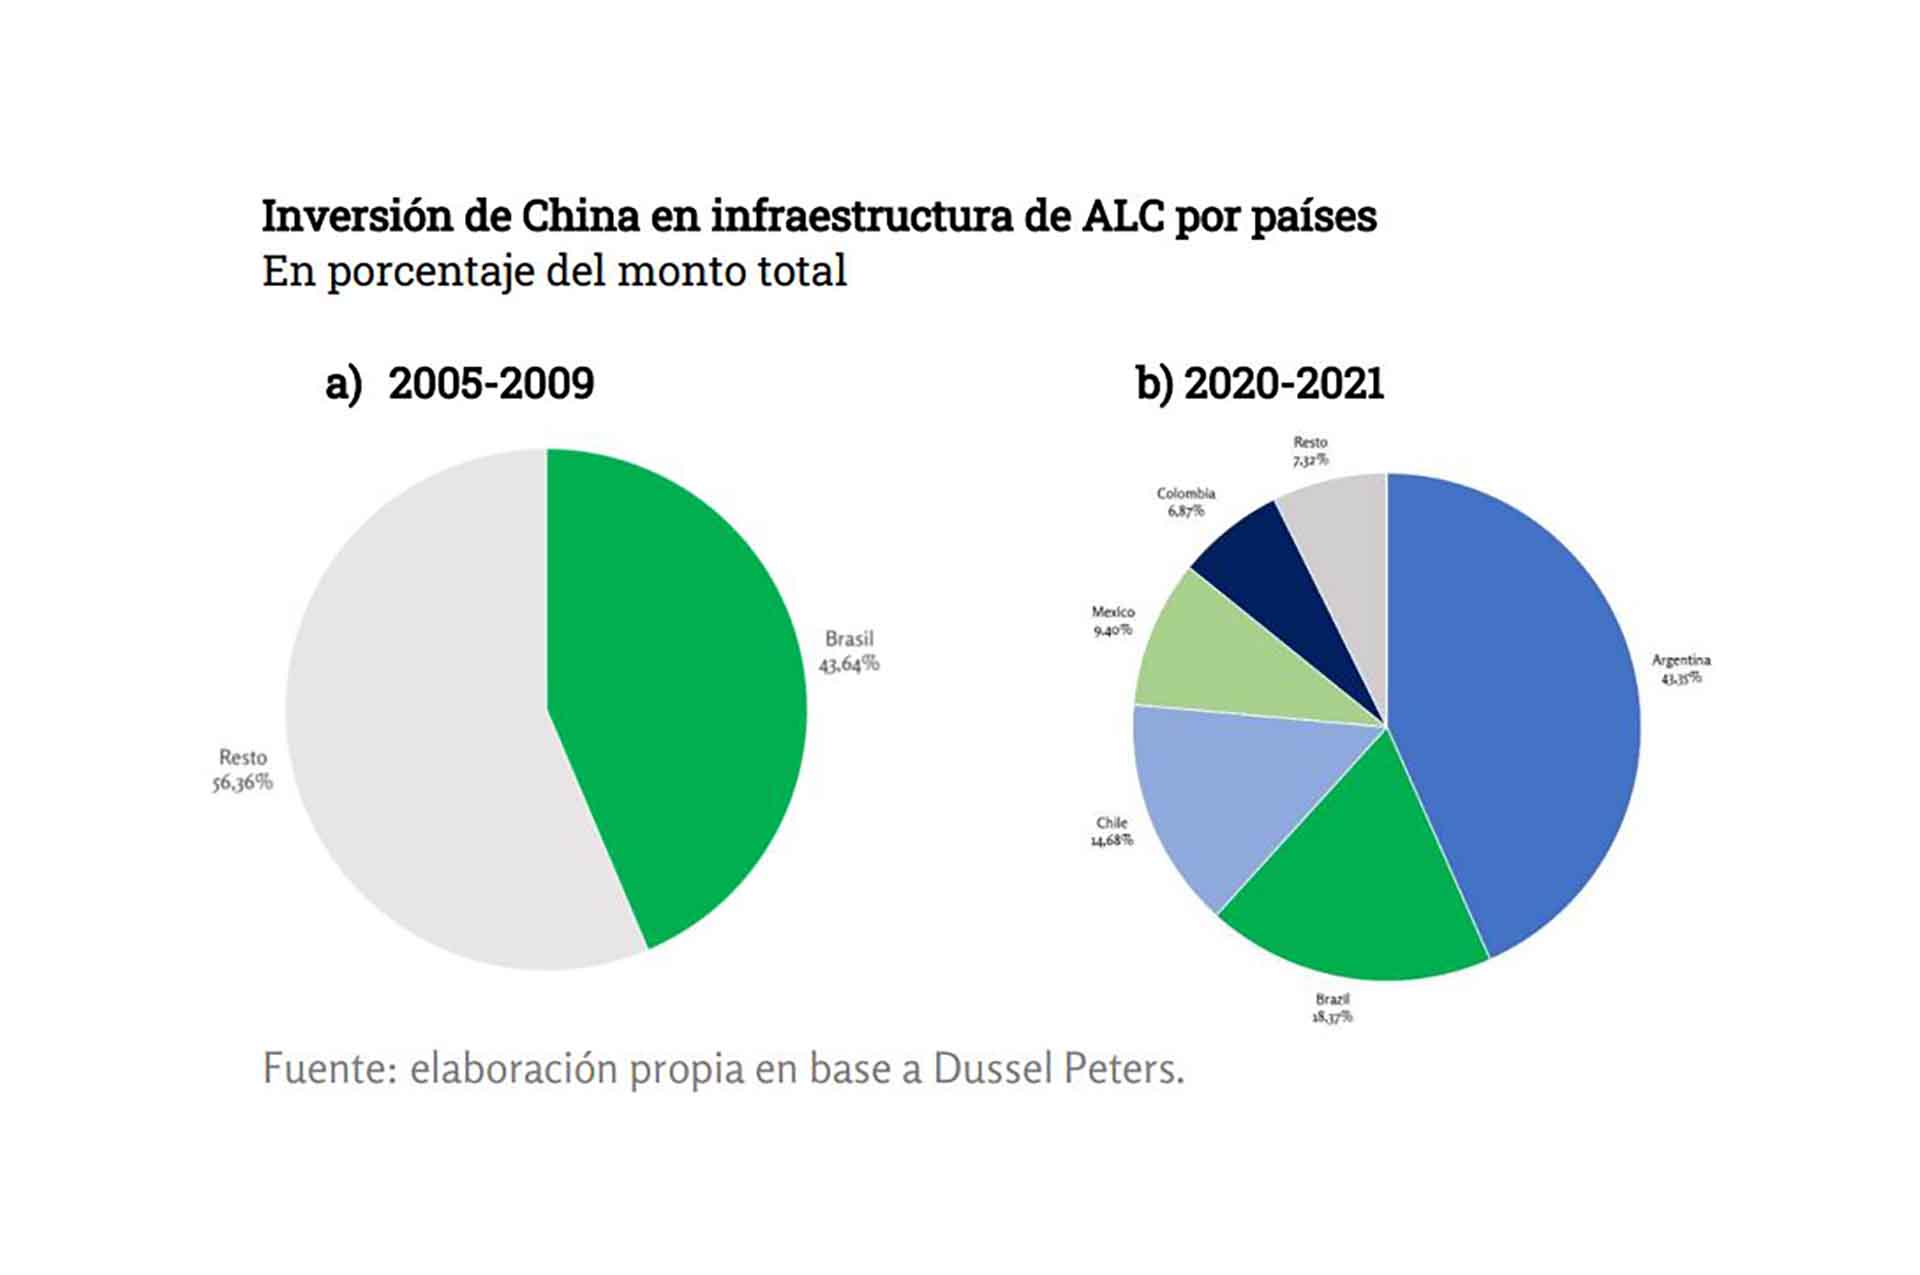 En los últimos años, la Argentina se volvió el principal receptor de las inversiones anunciadas por China. Pero los anuncios son mucho mayores a las inversiones reales, dice Marcelo Elizondo